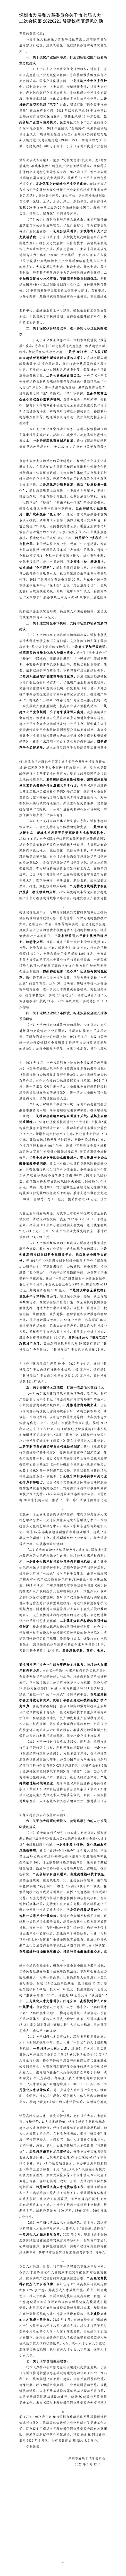 深圳市发展和改革委员会关于市七届人大二次会议第20220221号建议答复意见的函.jpg